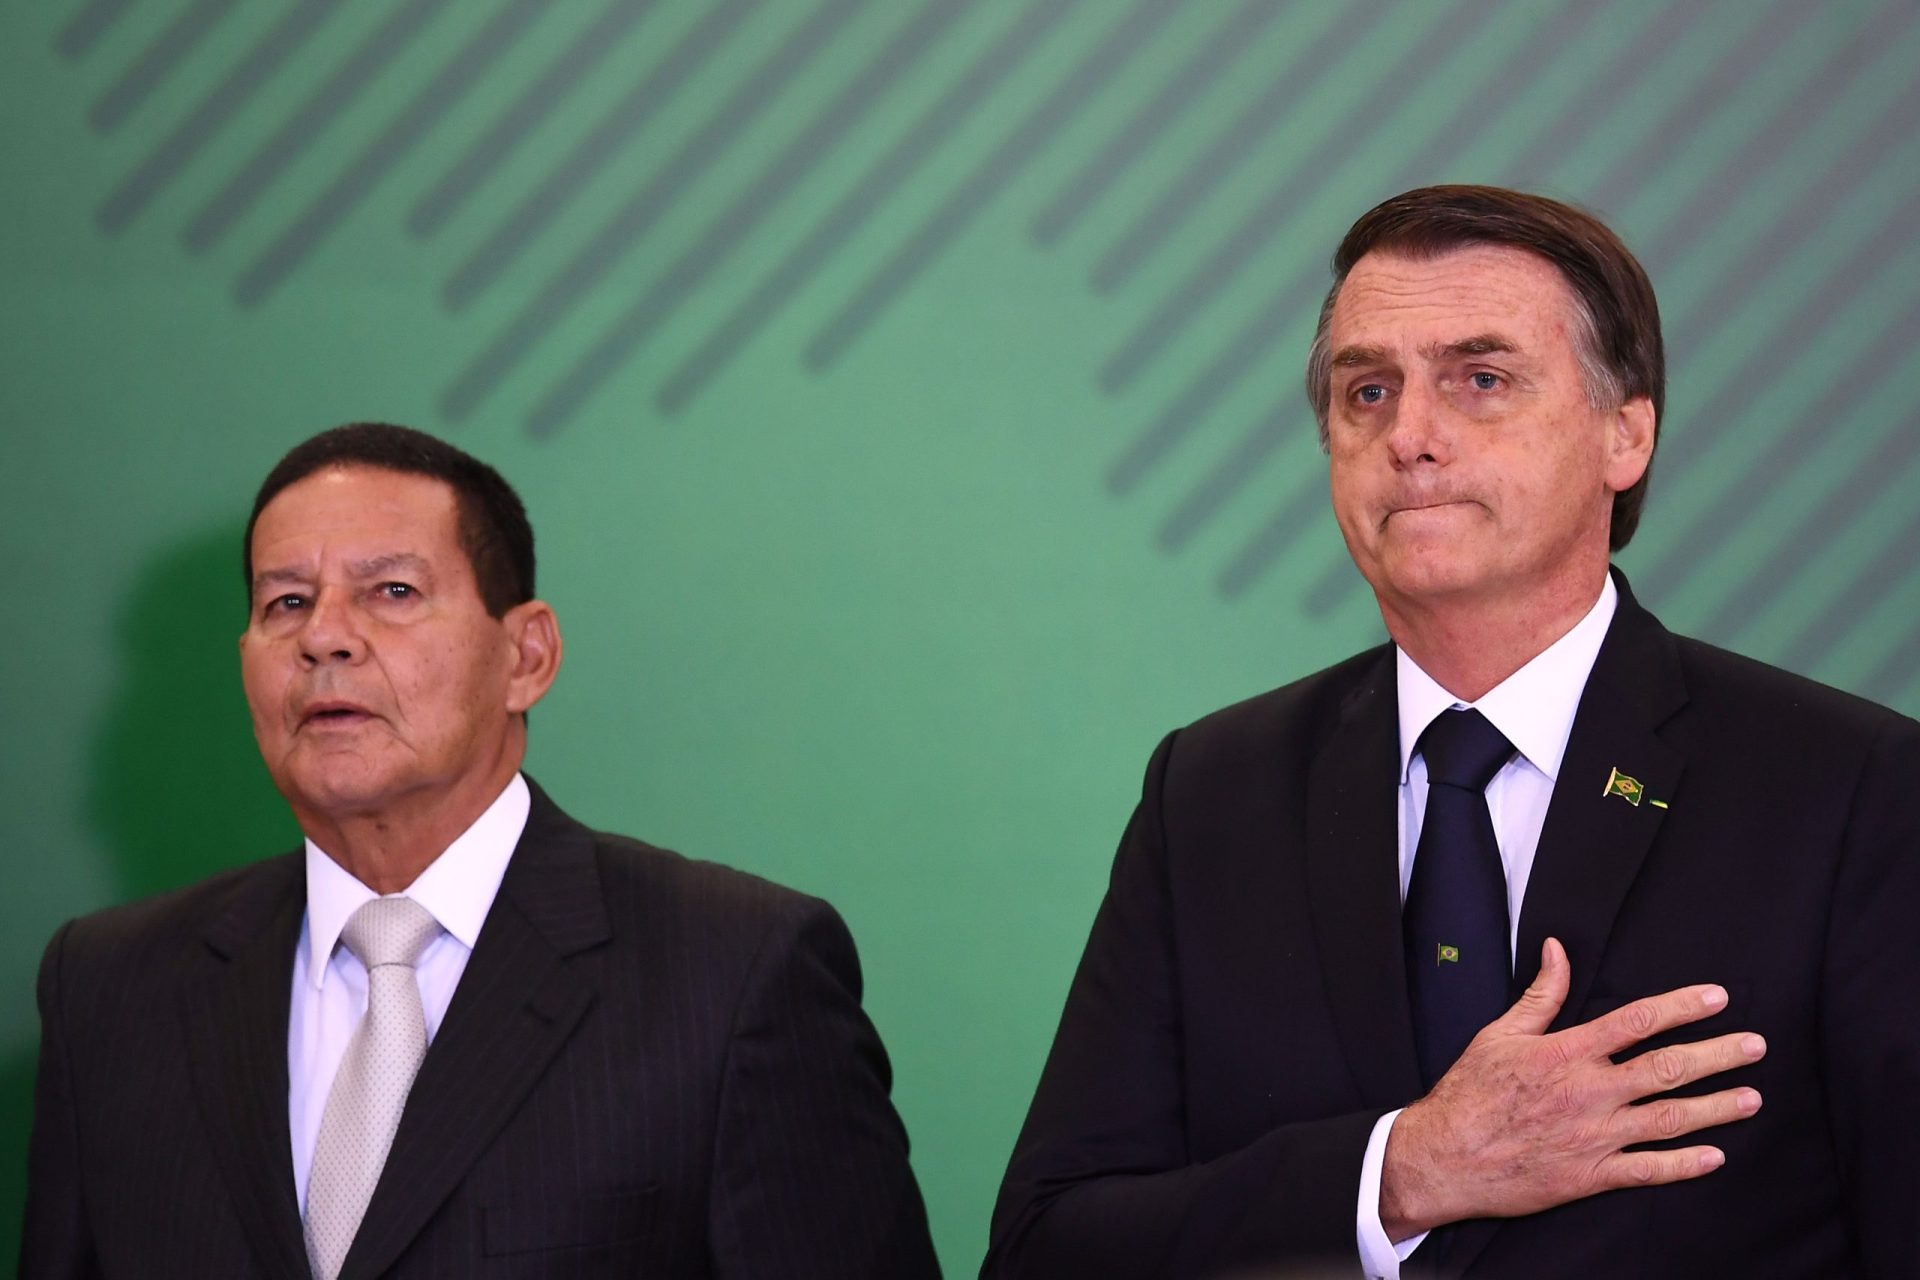 Filho de vice-presidente do Brasil é promovido no Banco do Brasil e passa a ganhar o triplo